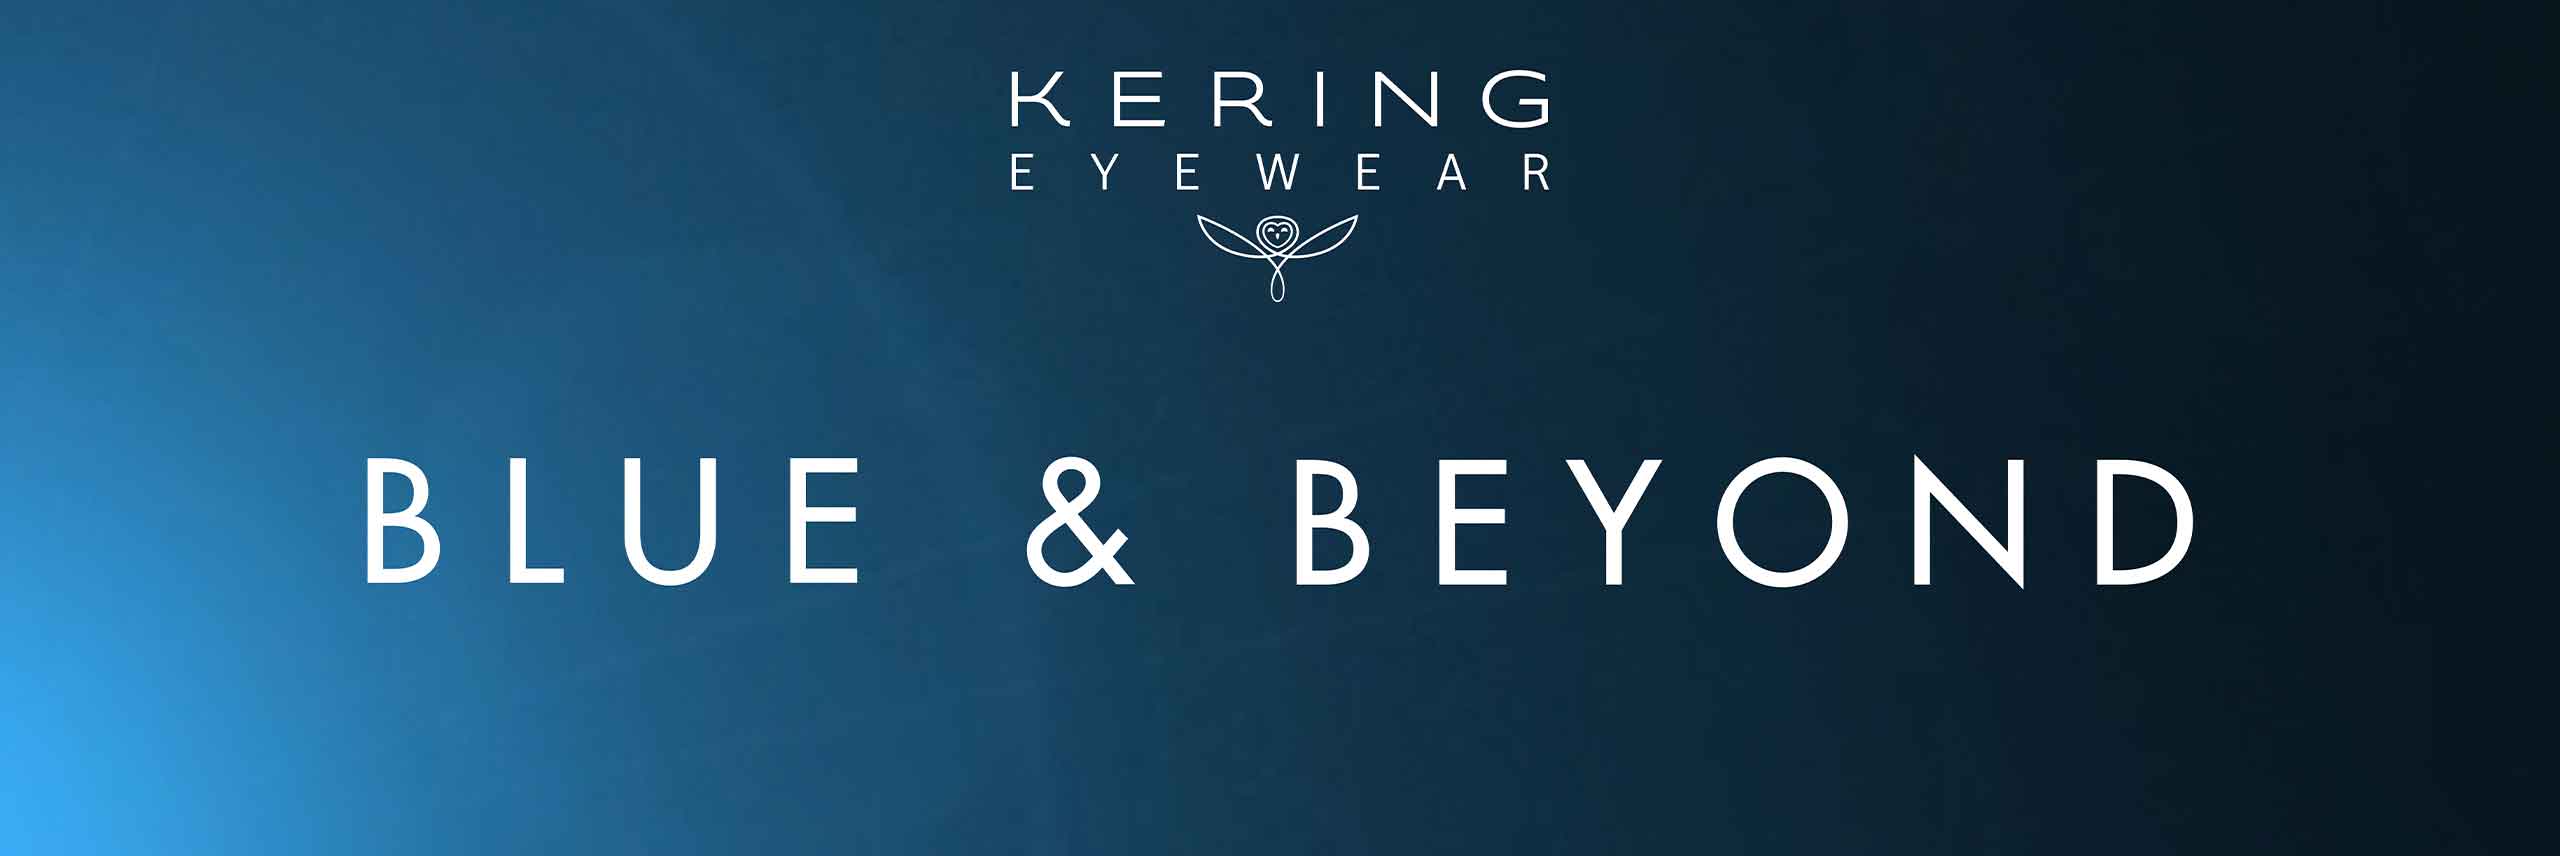 kering eyewear logo